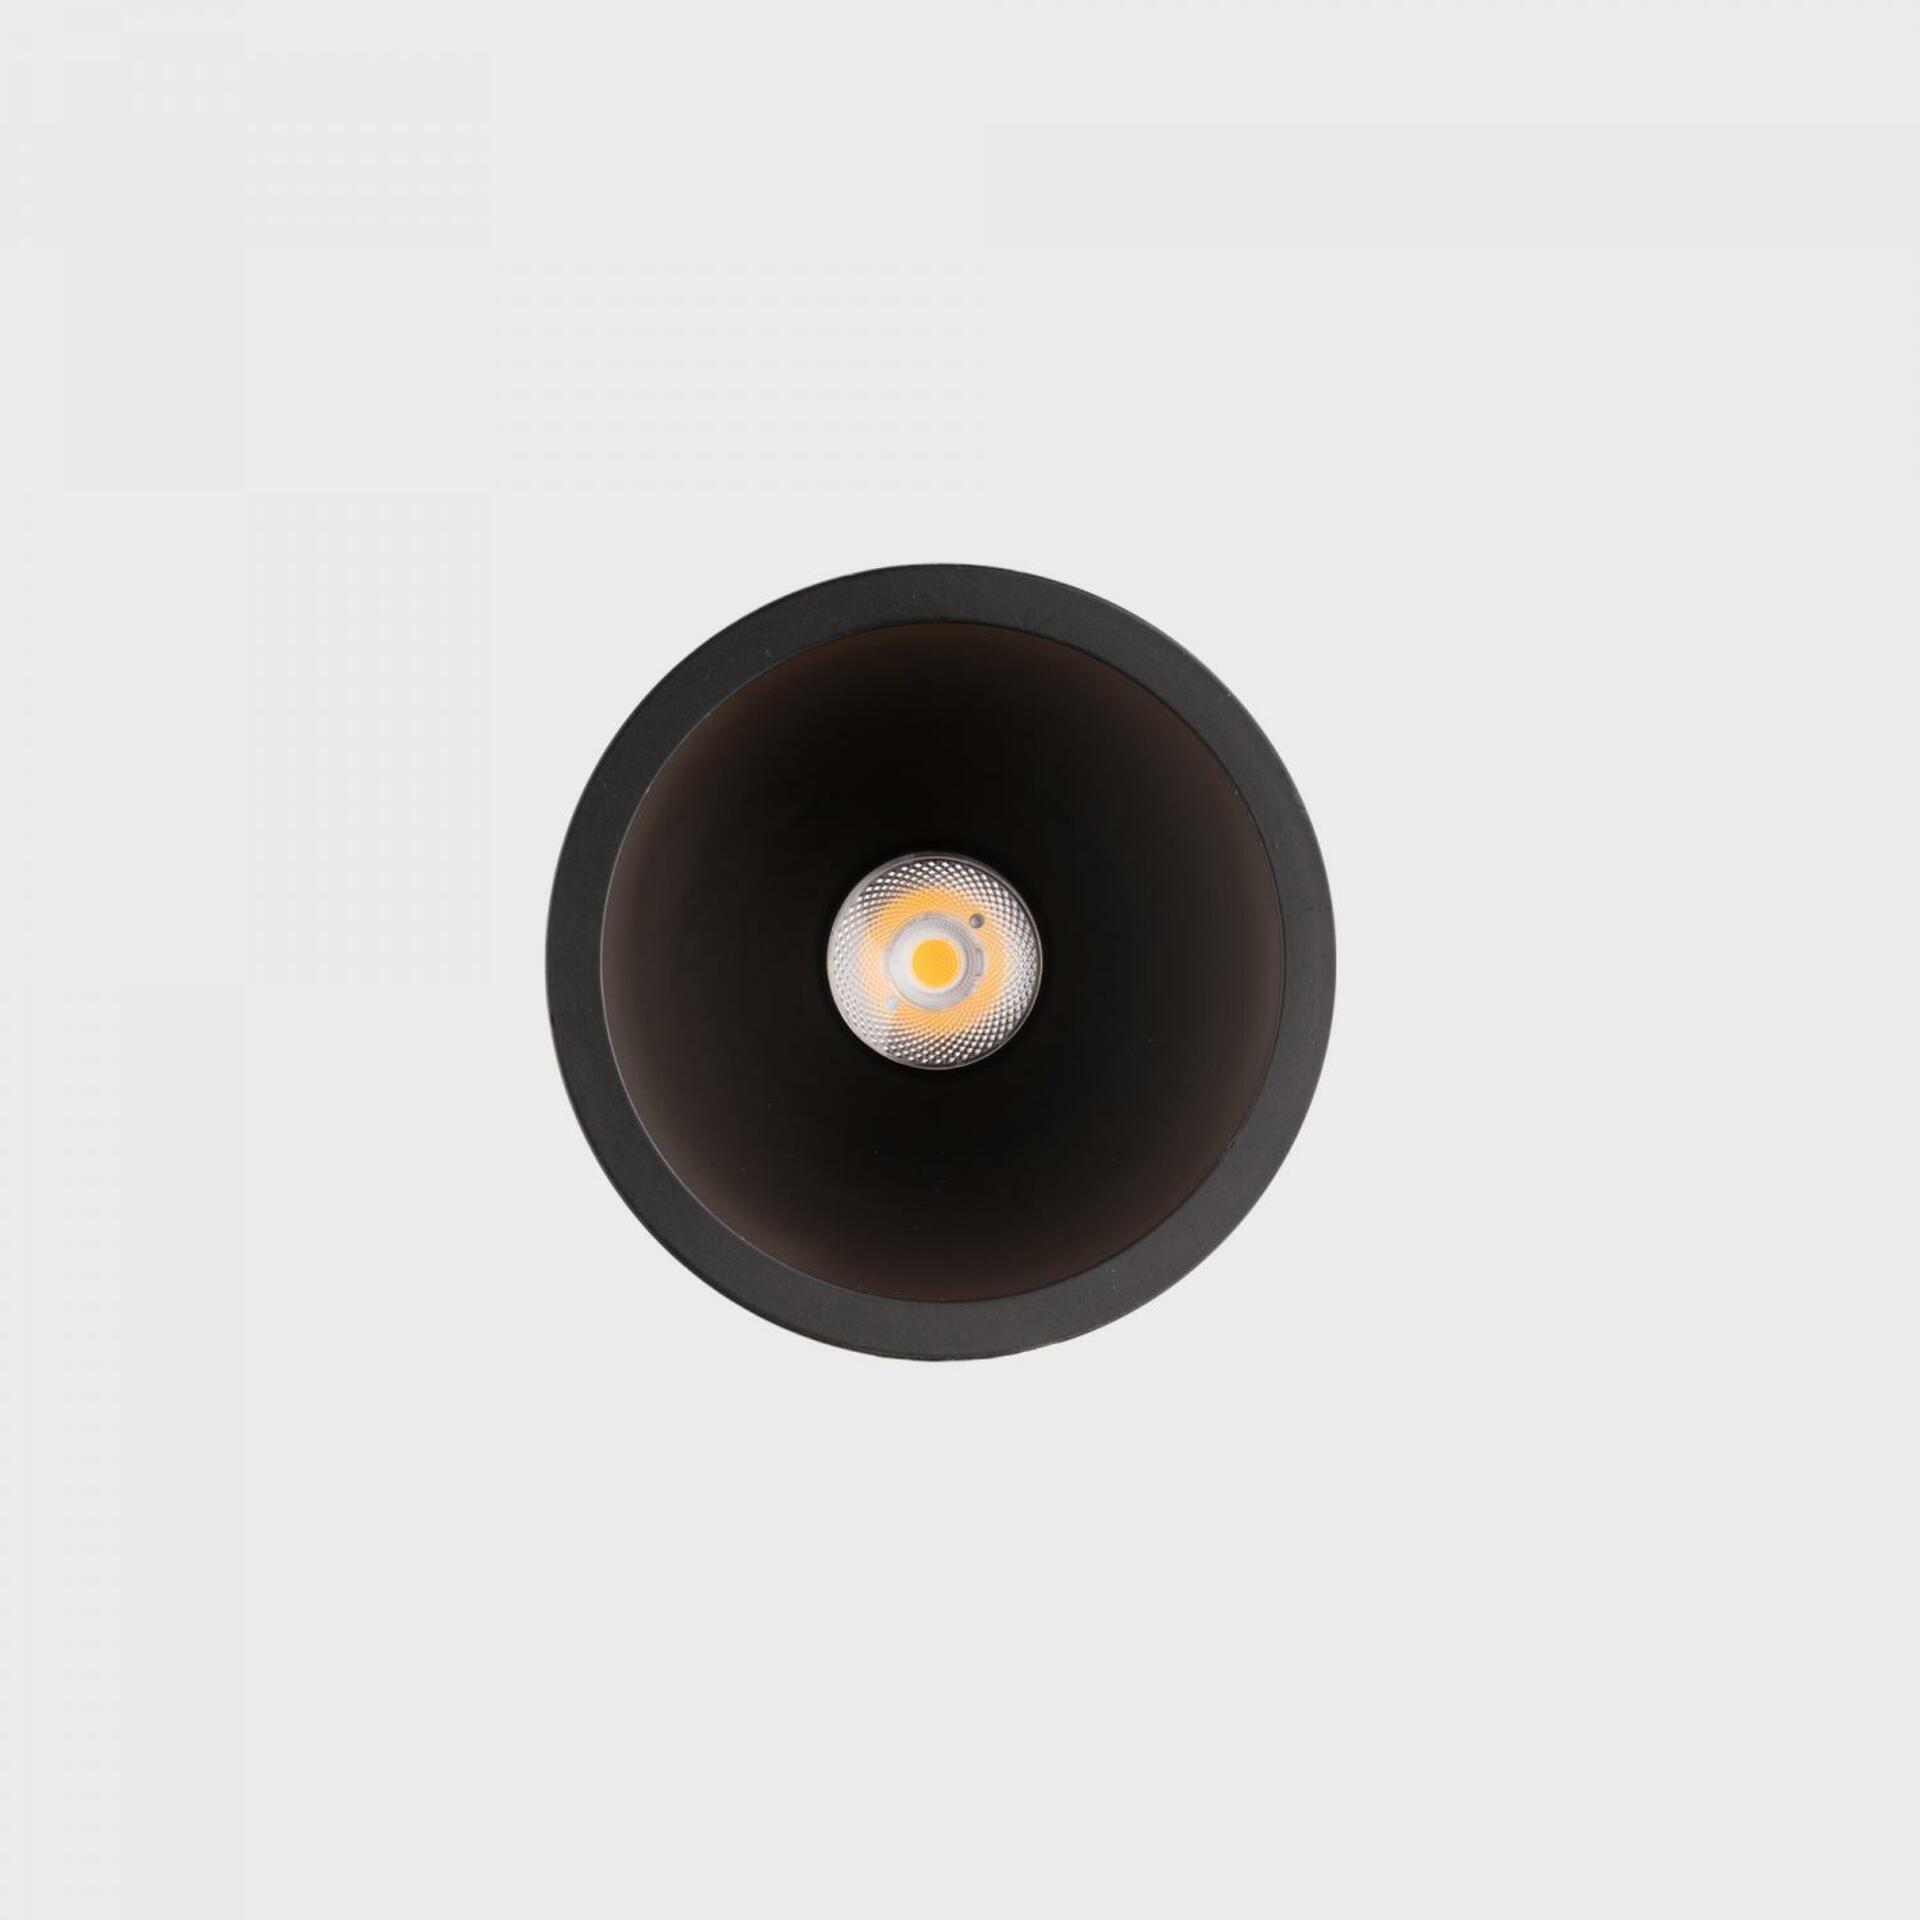 KOHL LIGHTING KOHL-Lighting NOON zapuštěné svítidlo s rámečkem pr. 70 mm černá 38° 5 W  CRI 80 2700K PUSH